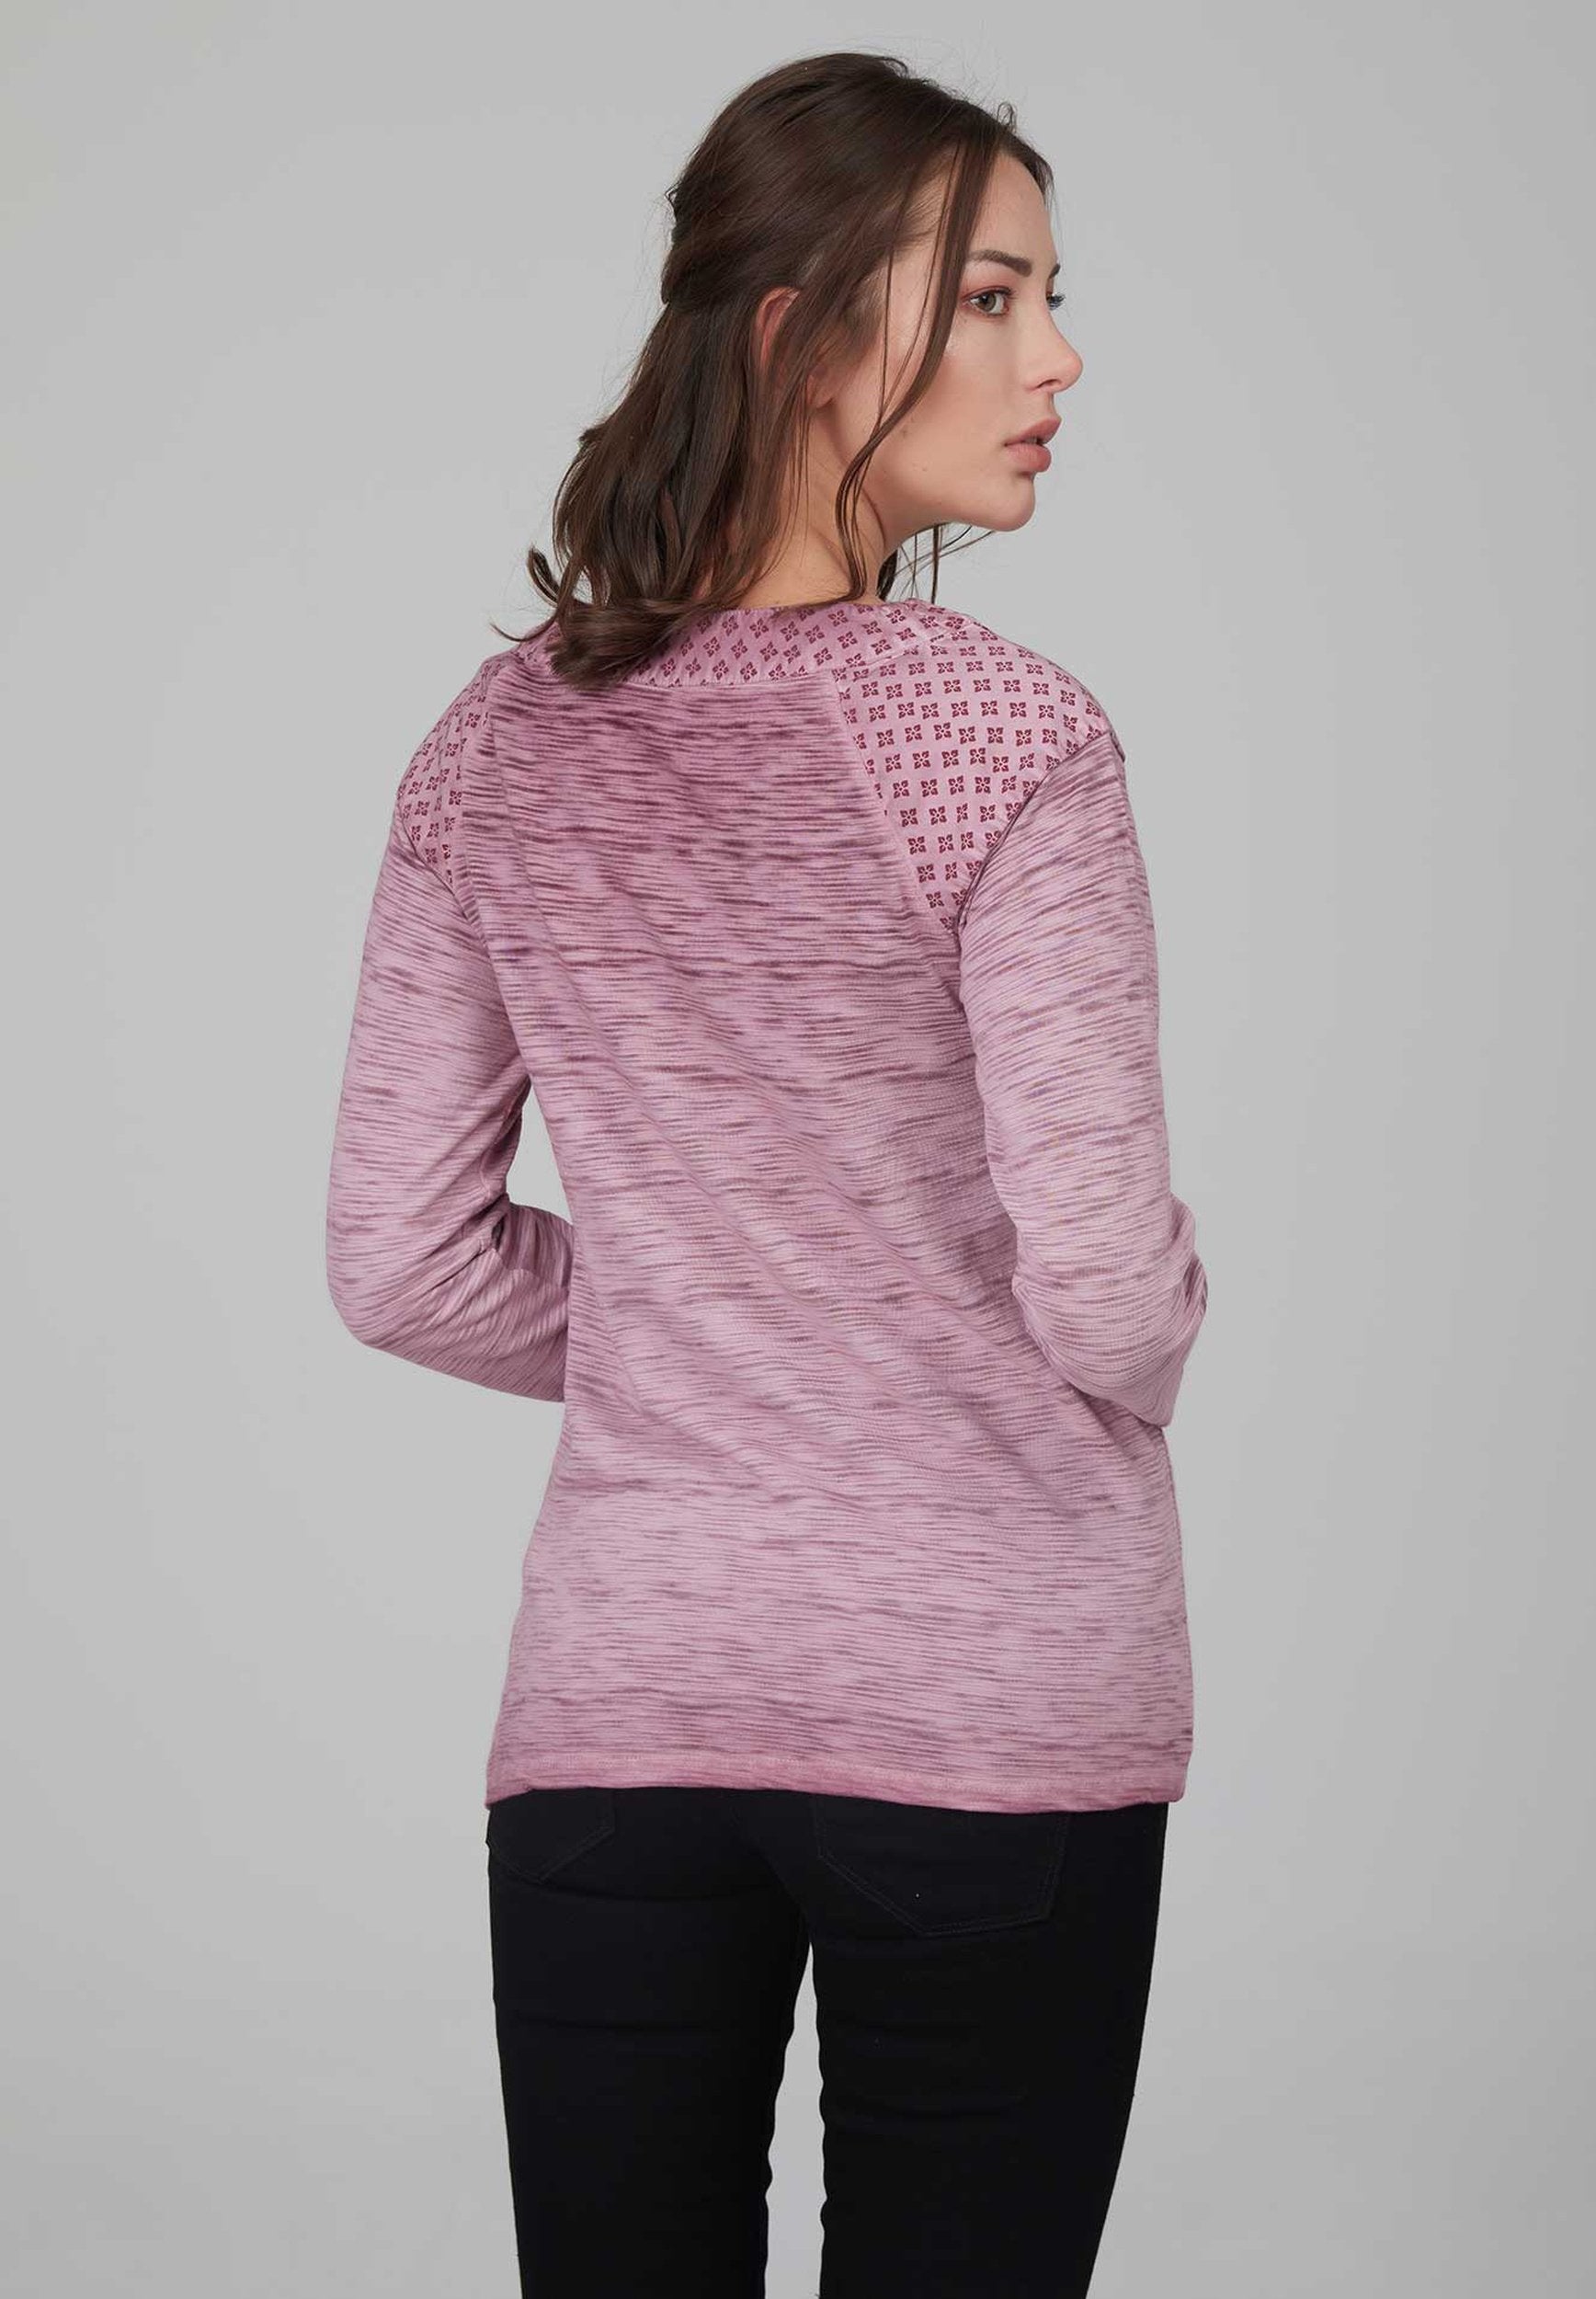 Flammgarnshirt als Basic in trendiger Farbe aus Bio-Baumwolle